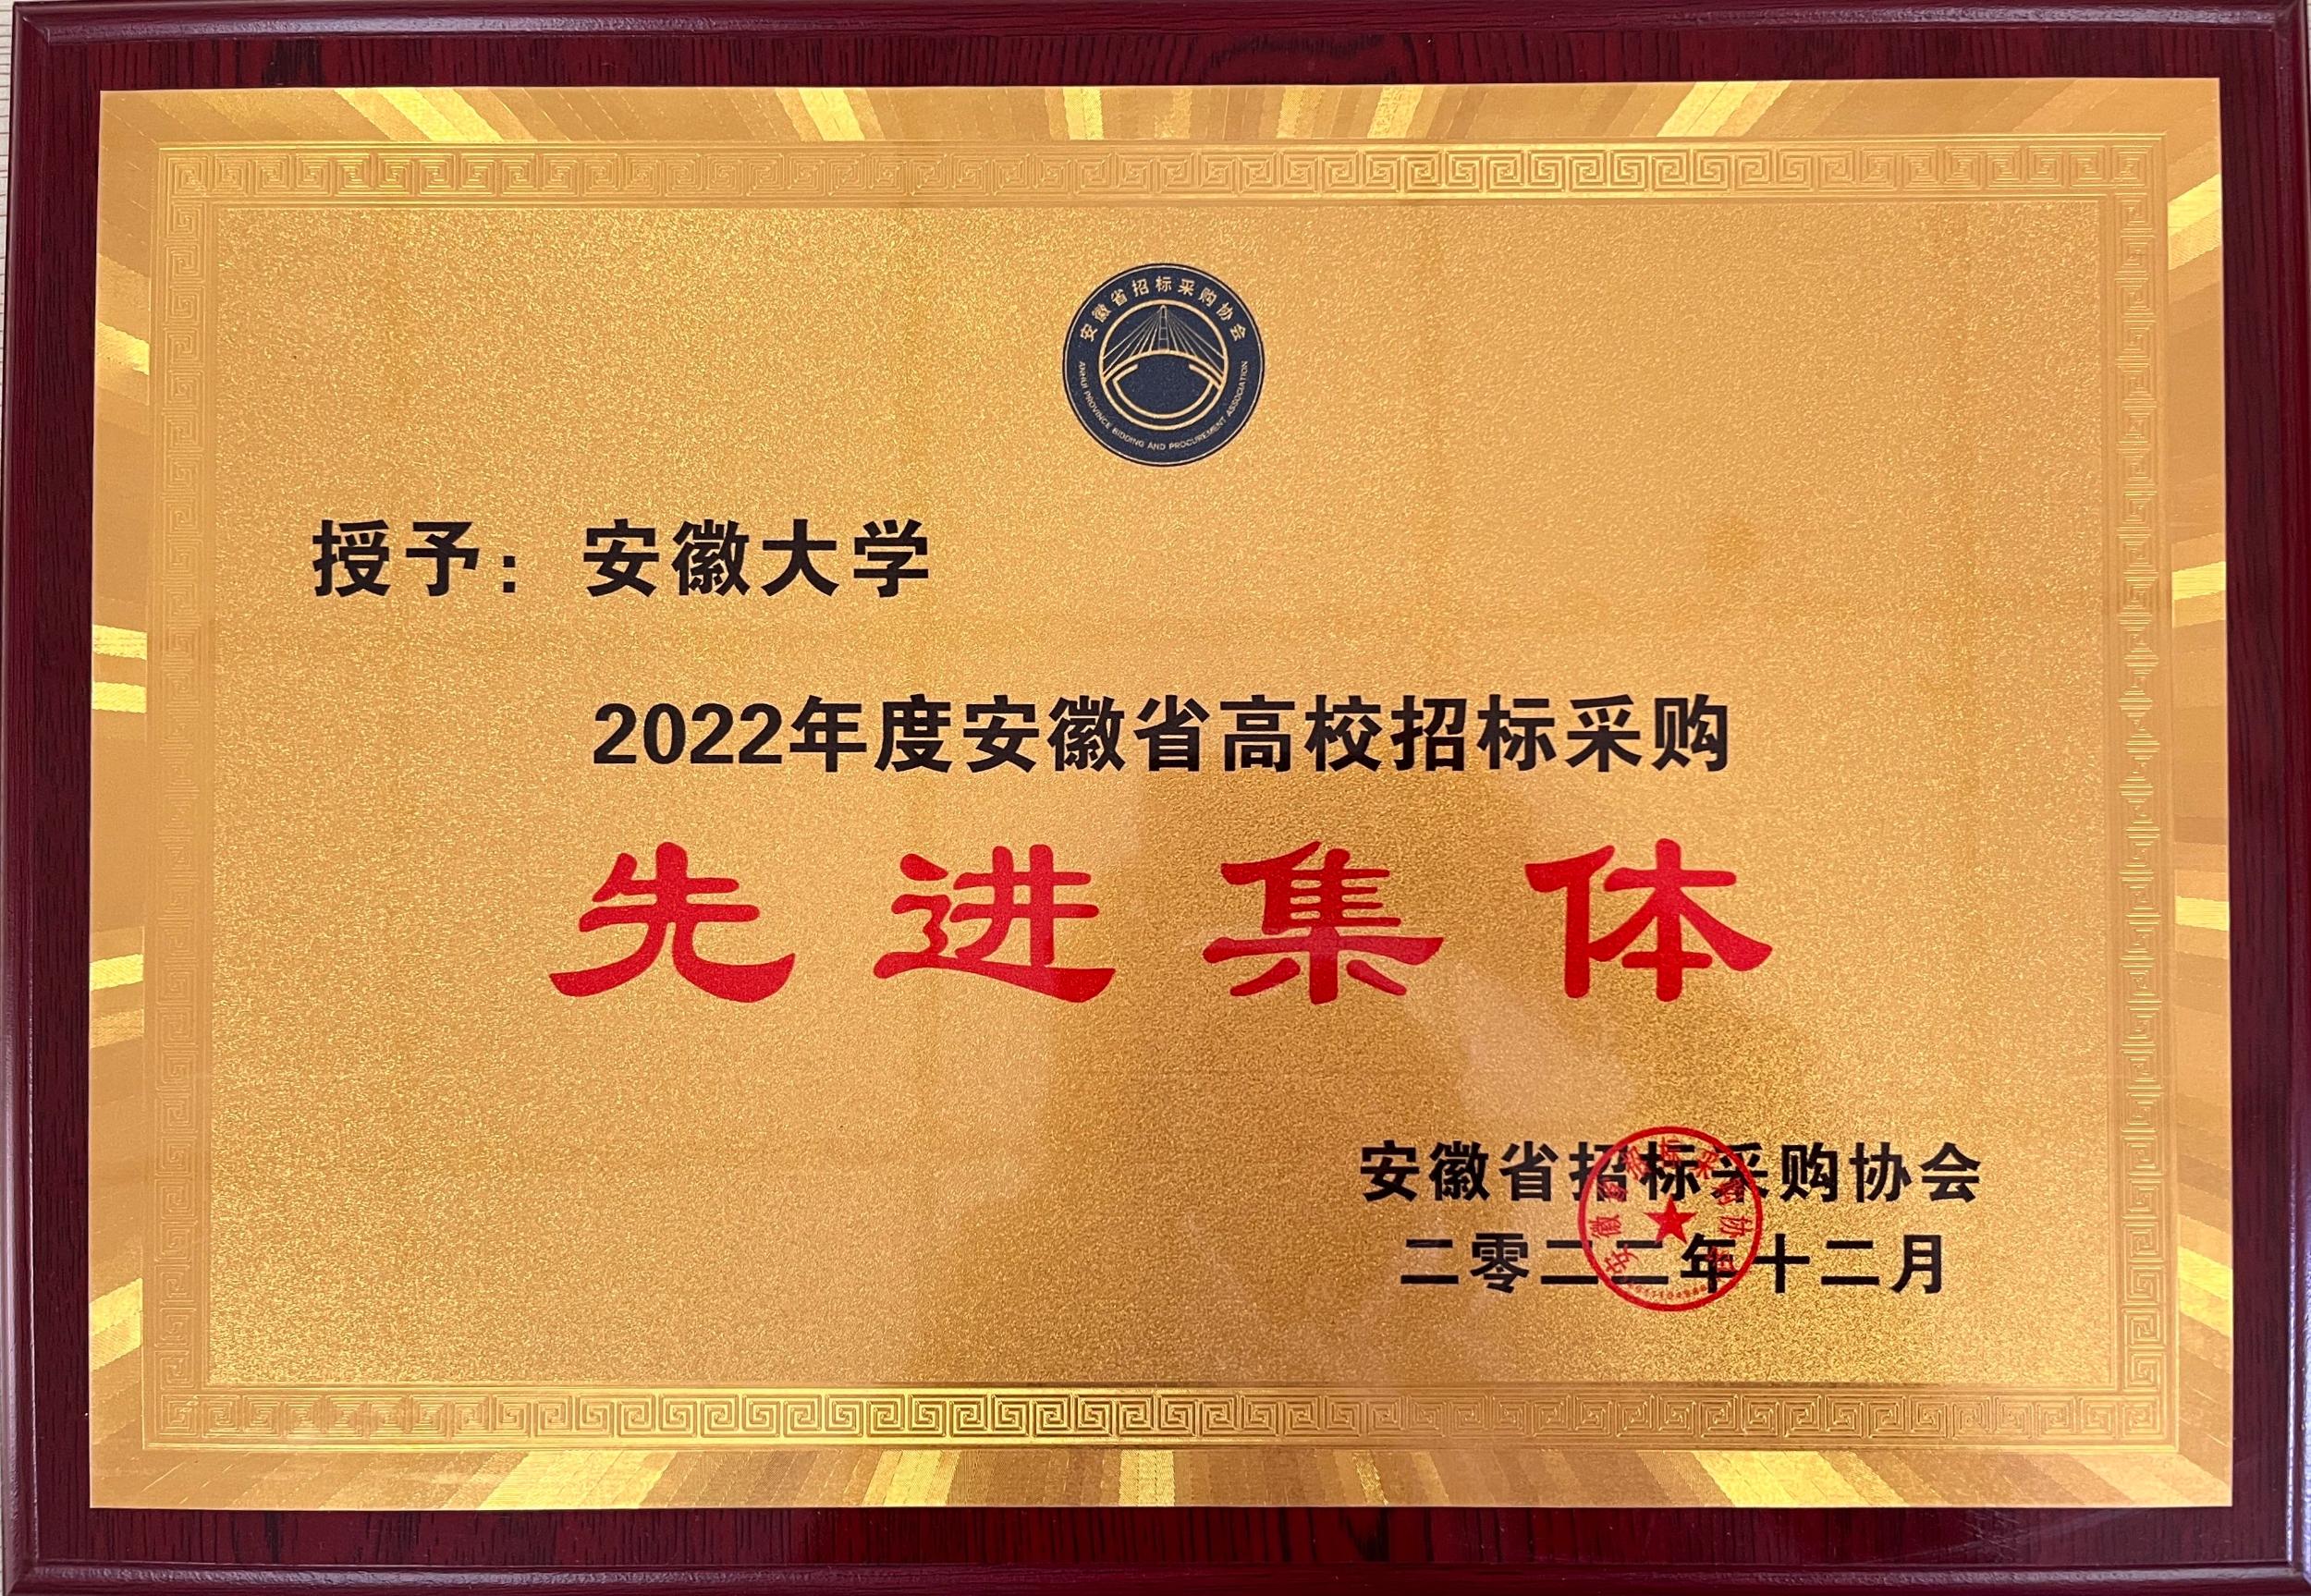 我校获评2022年度安徽省高校招标采购先进集体